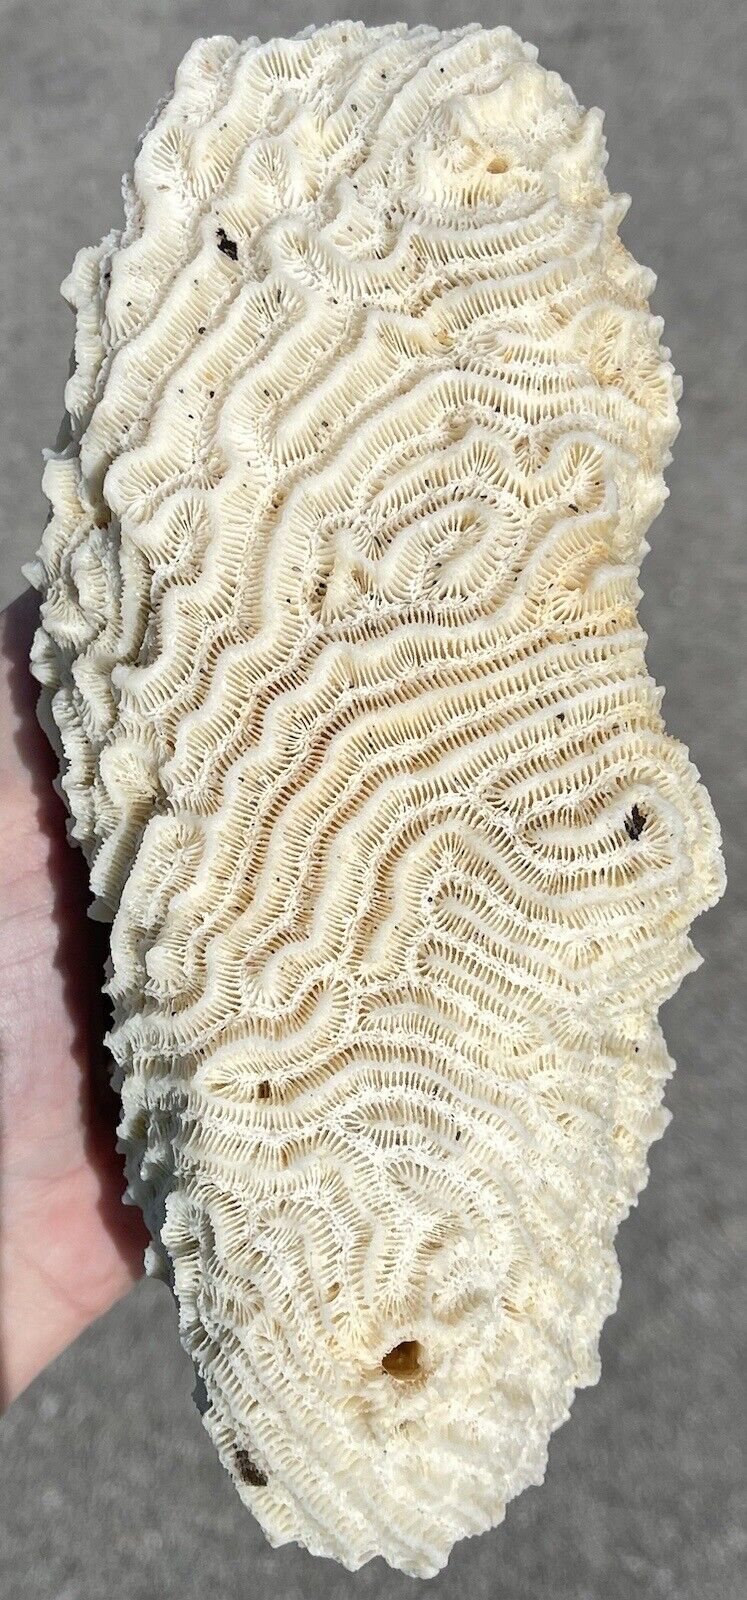 8” White Brain Coral Cluster Stromatolite Fossil Ocean Aquarium Decor 3Lb+